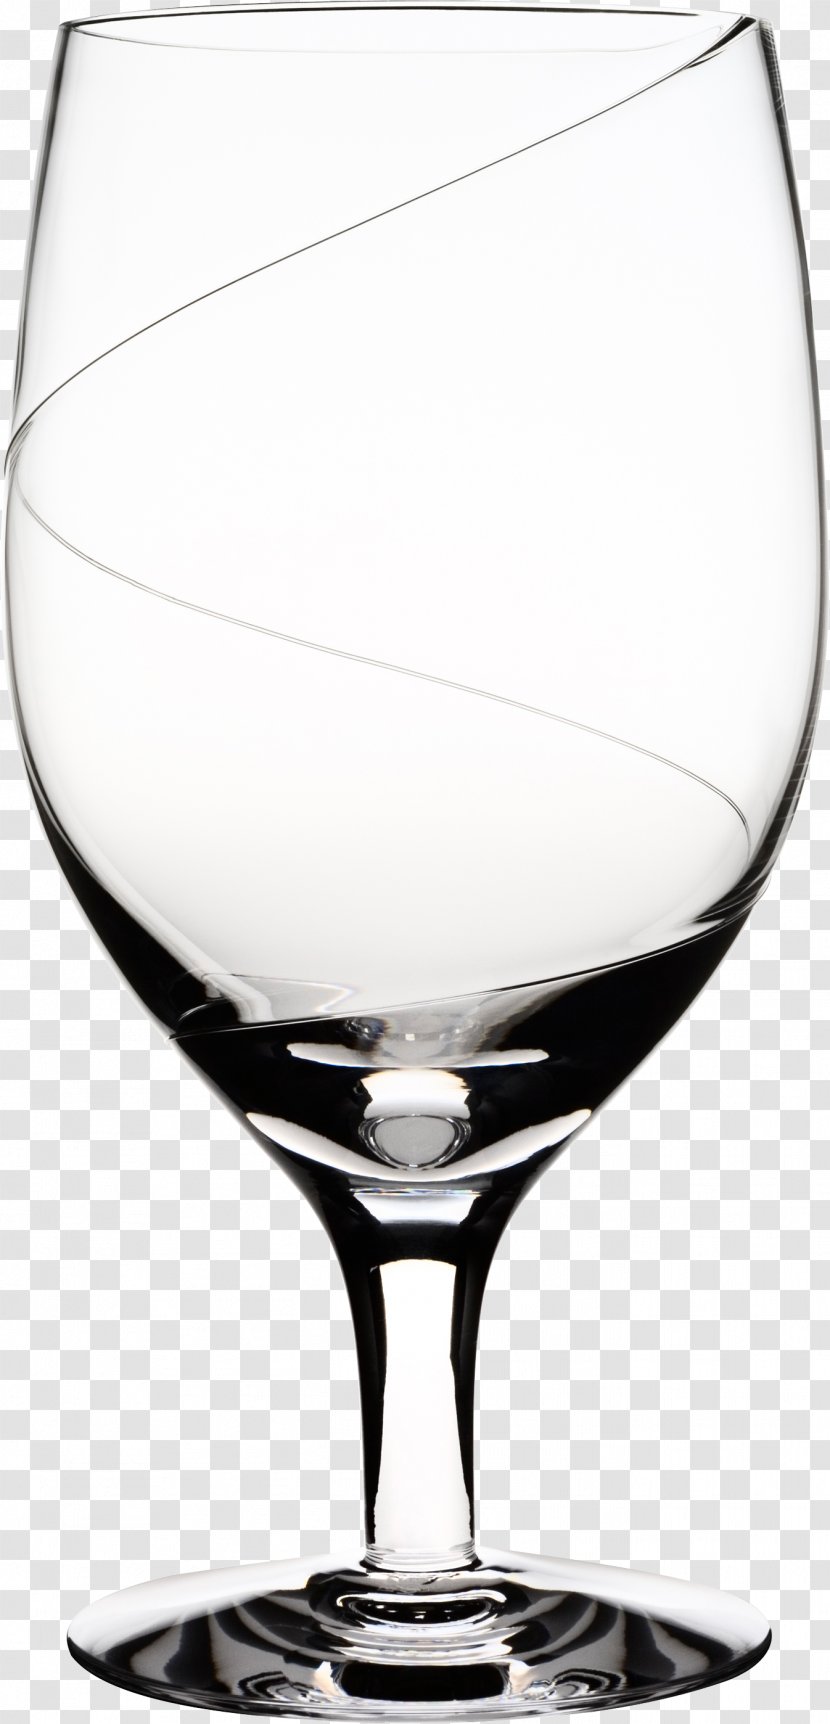 Wine Glass Kingdom Of Crystal Kosta, Sweden Orrefors Kosta Glasbruk - Beer Glasses - Empty Image Transparent PNG